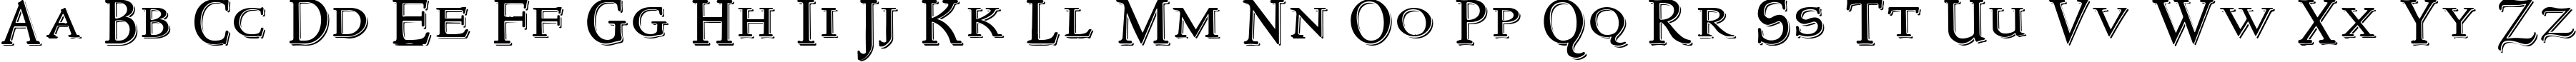 Пример написания английского алфавита шрифтом NewStyleTitling Embossed